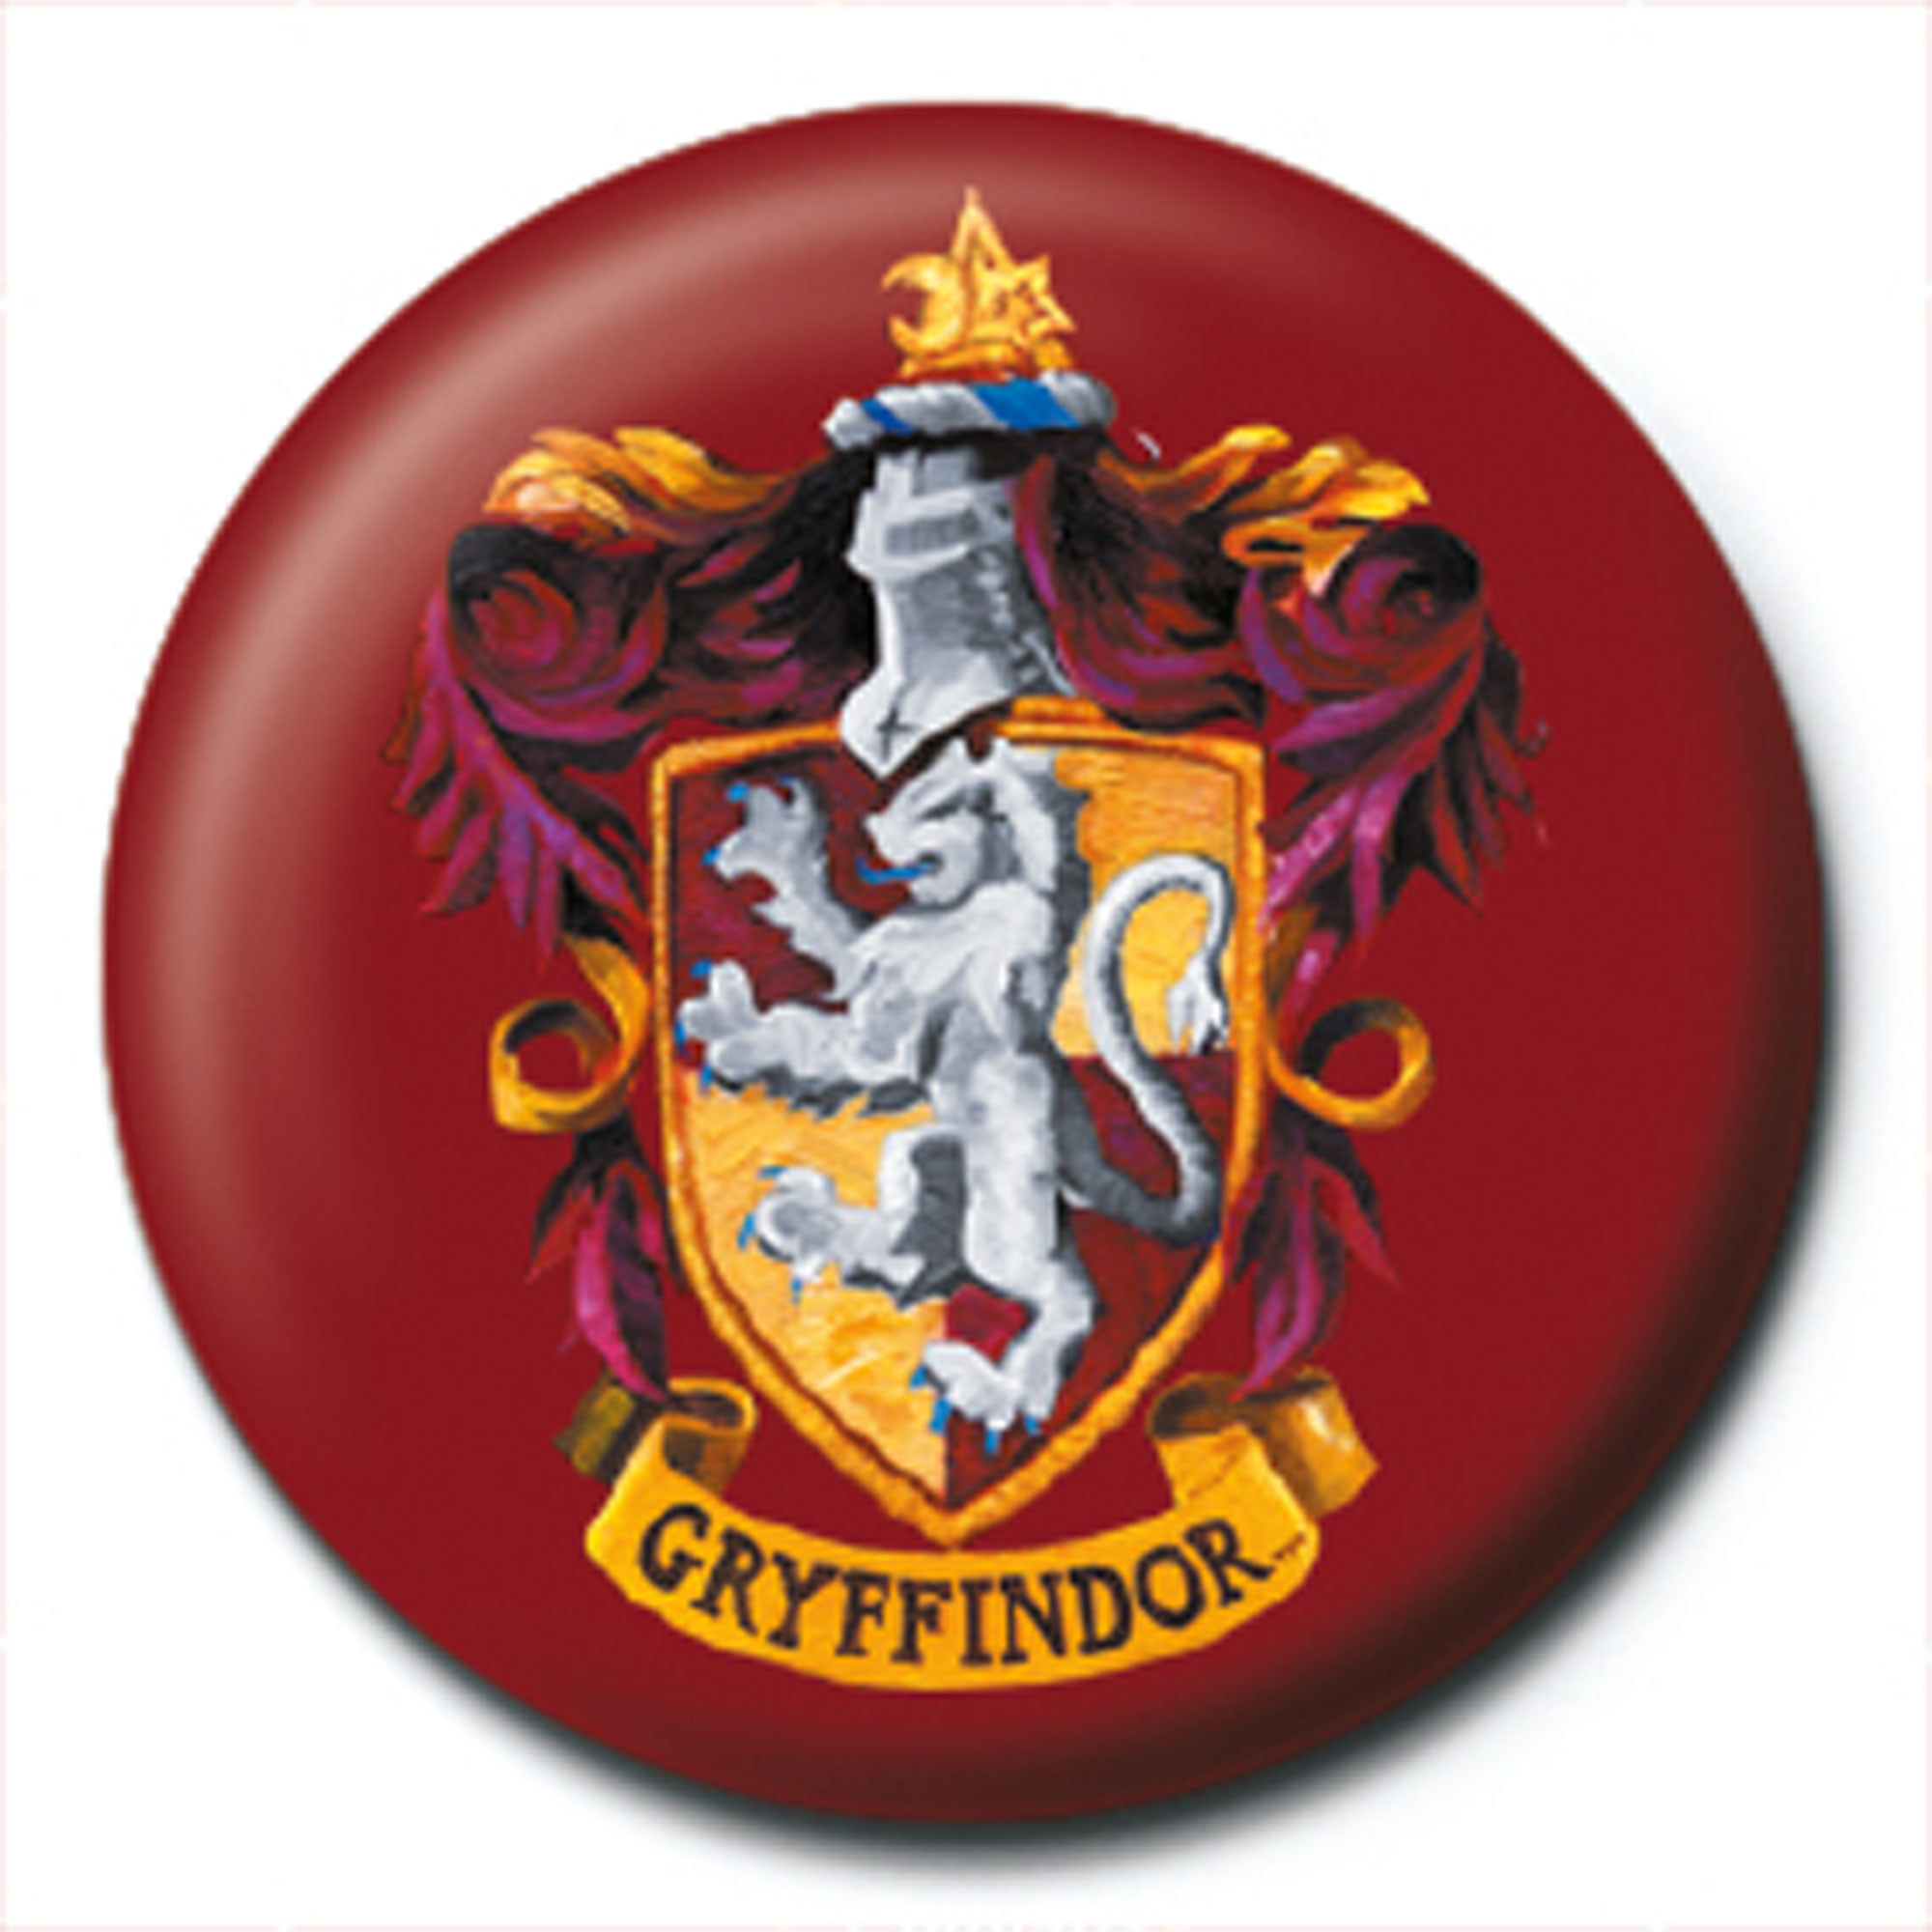 Harry Potter Gryffindor - Crest